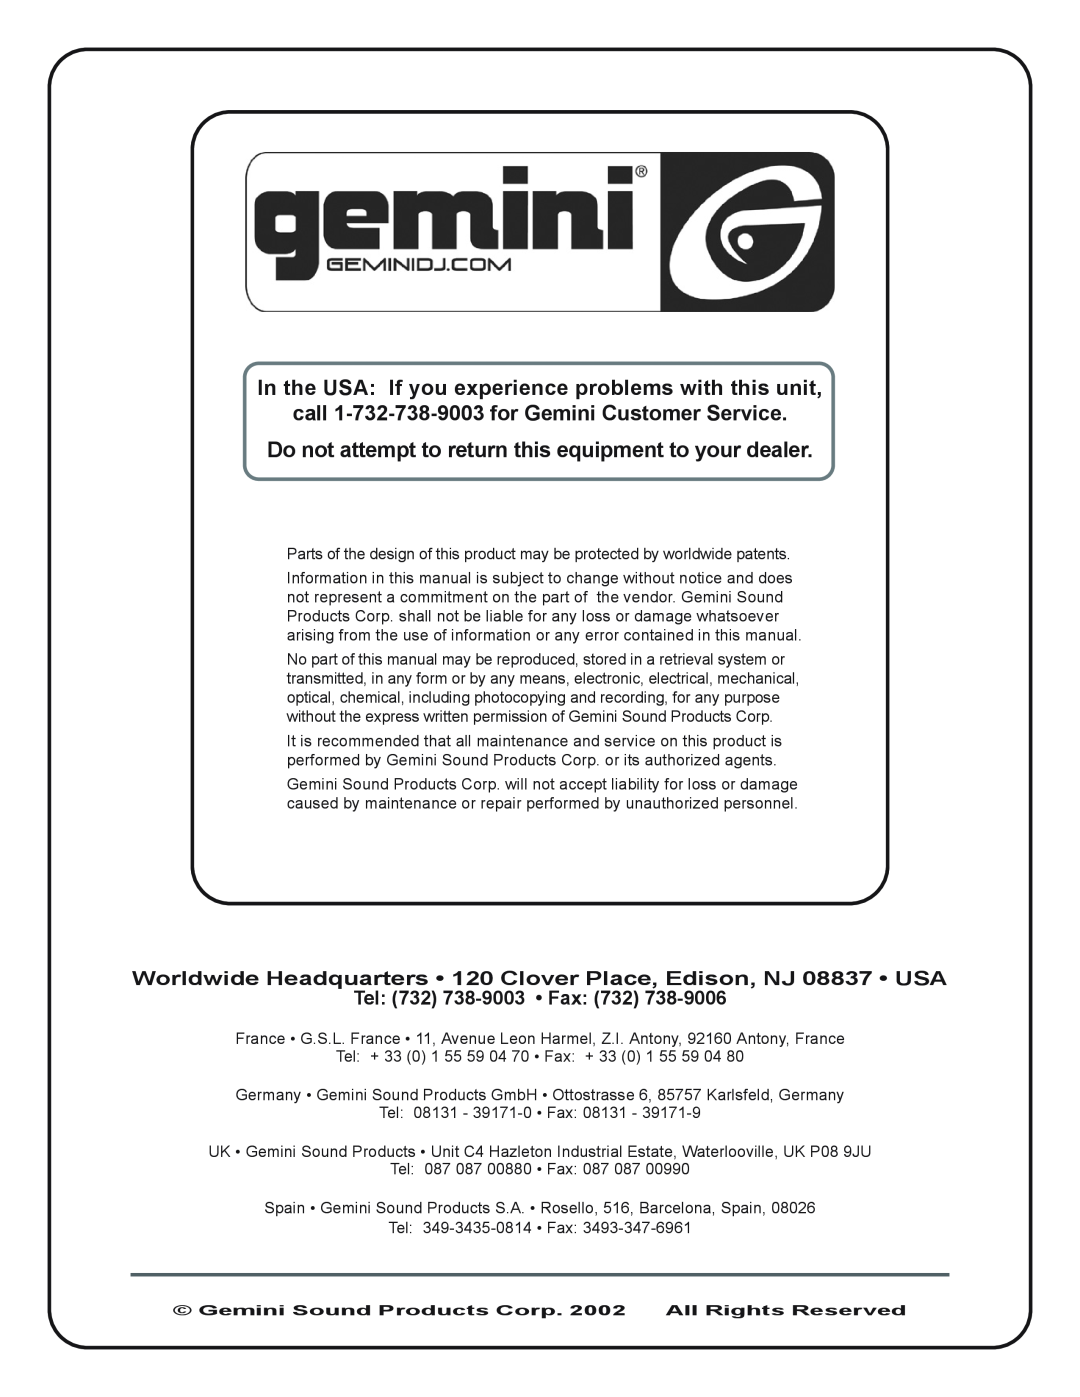 Gemini XL-200 manual call 1-732-738-9003for Gemini Customer Service, Tel 732 738-9003 Fax 